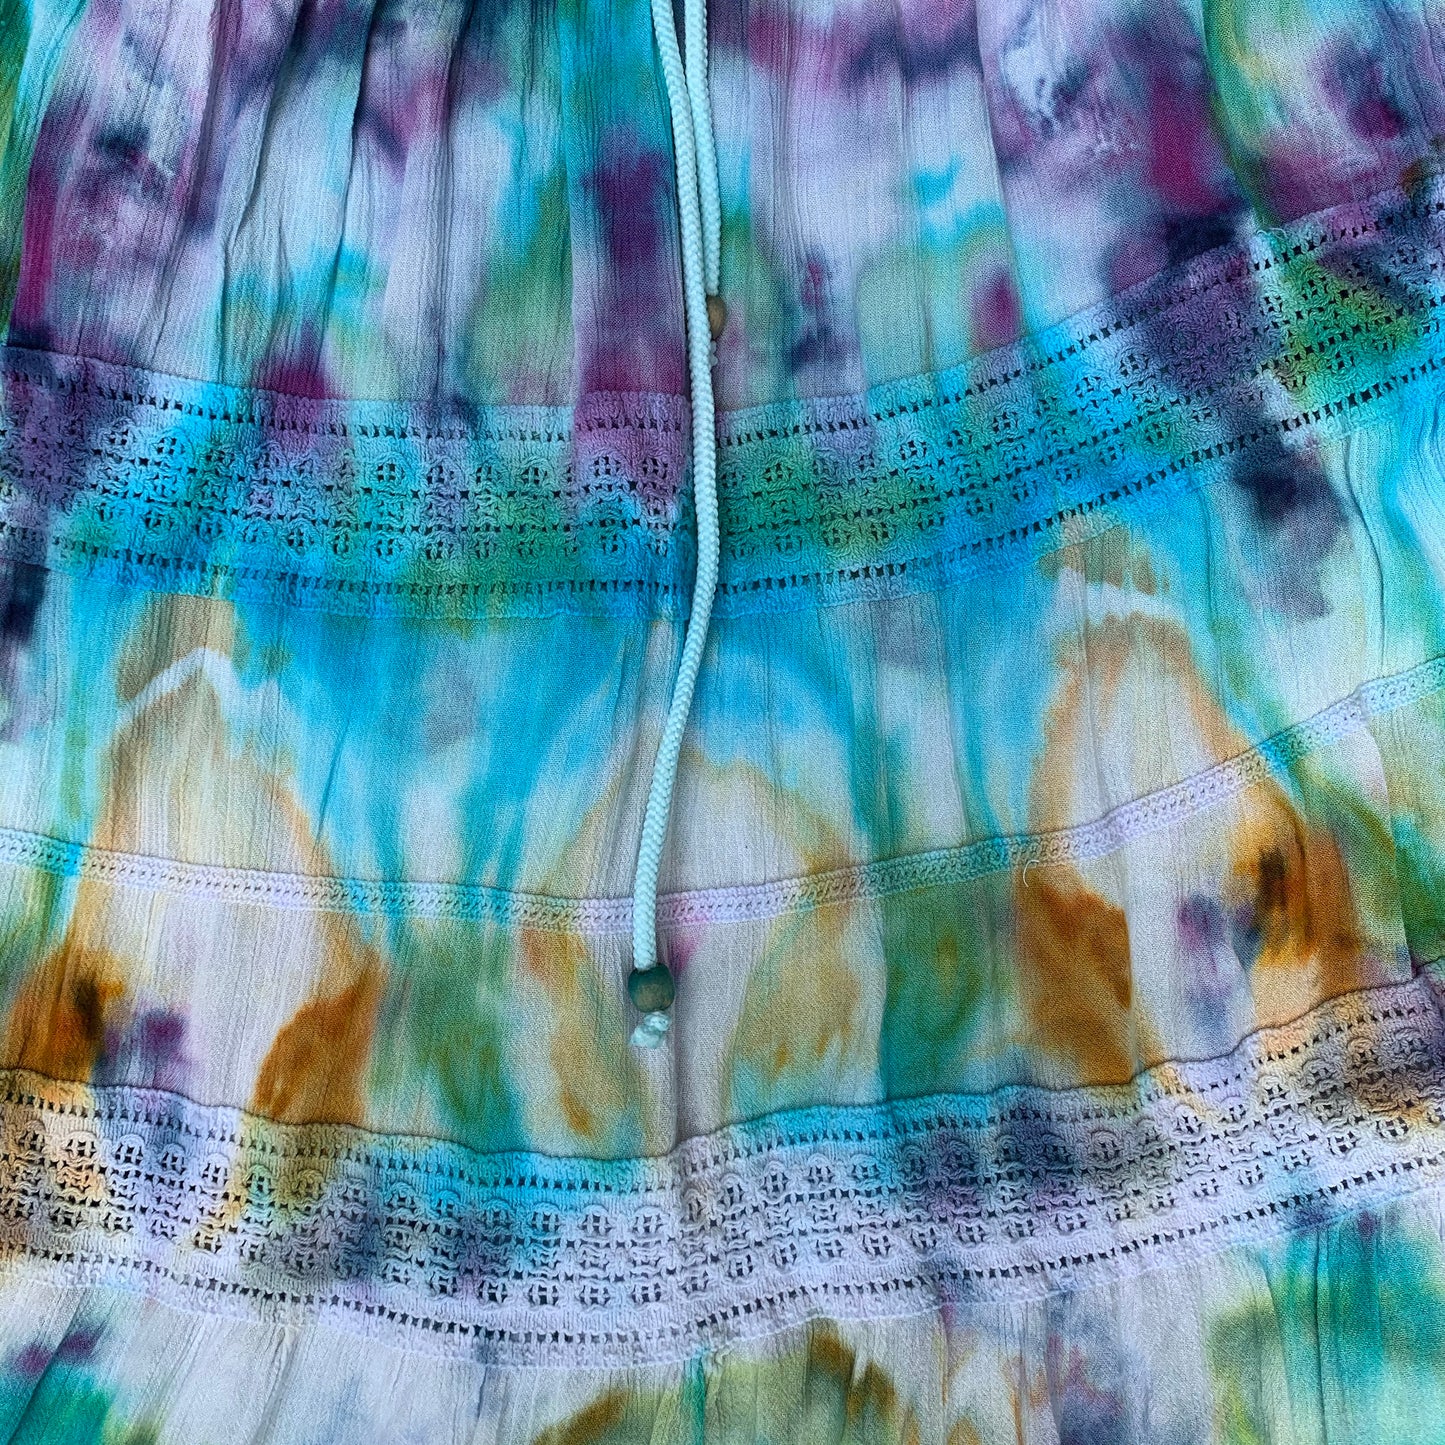 Technicolor Treat | Skirt | 26-40” waist